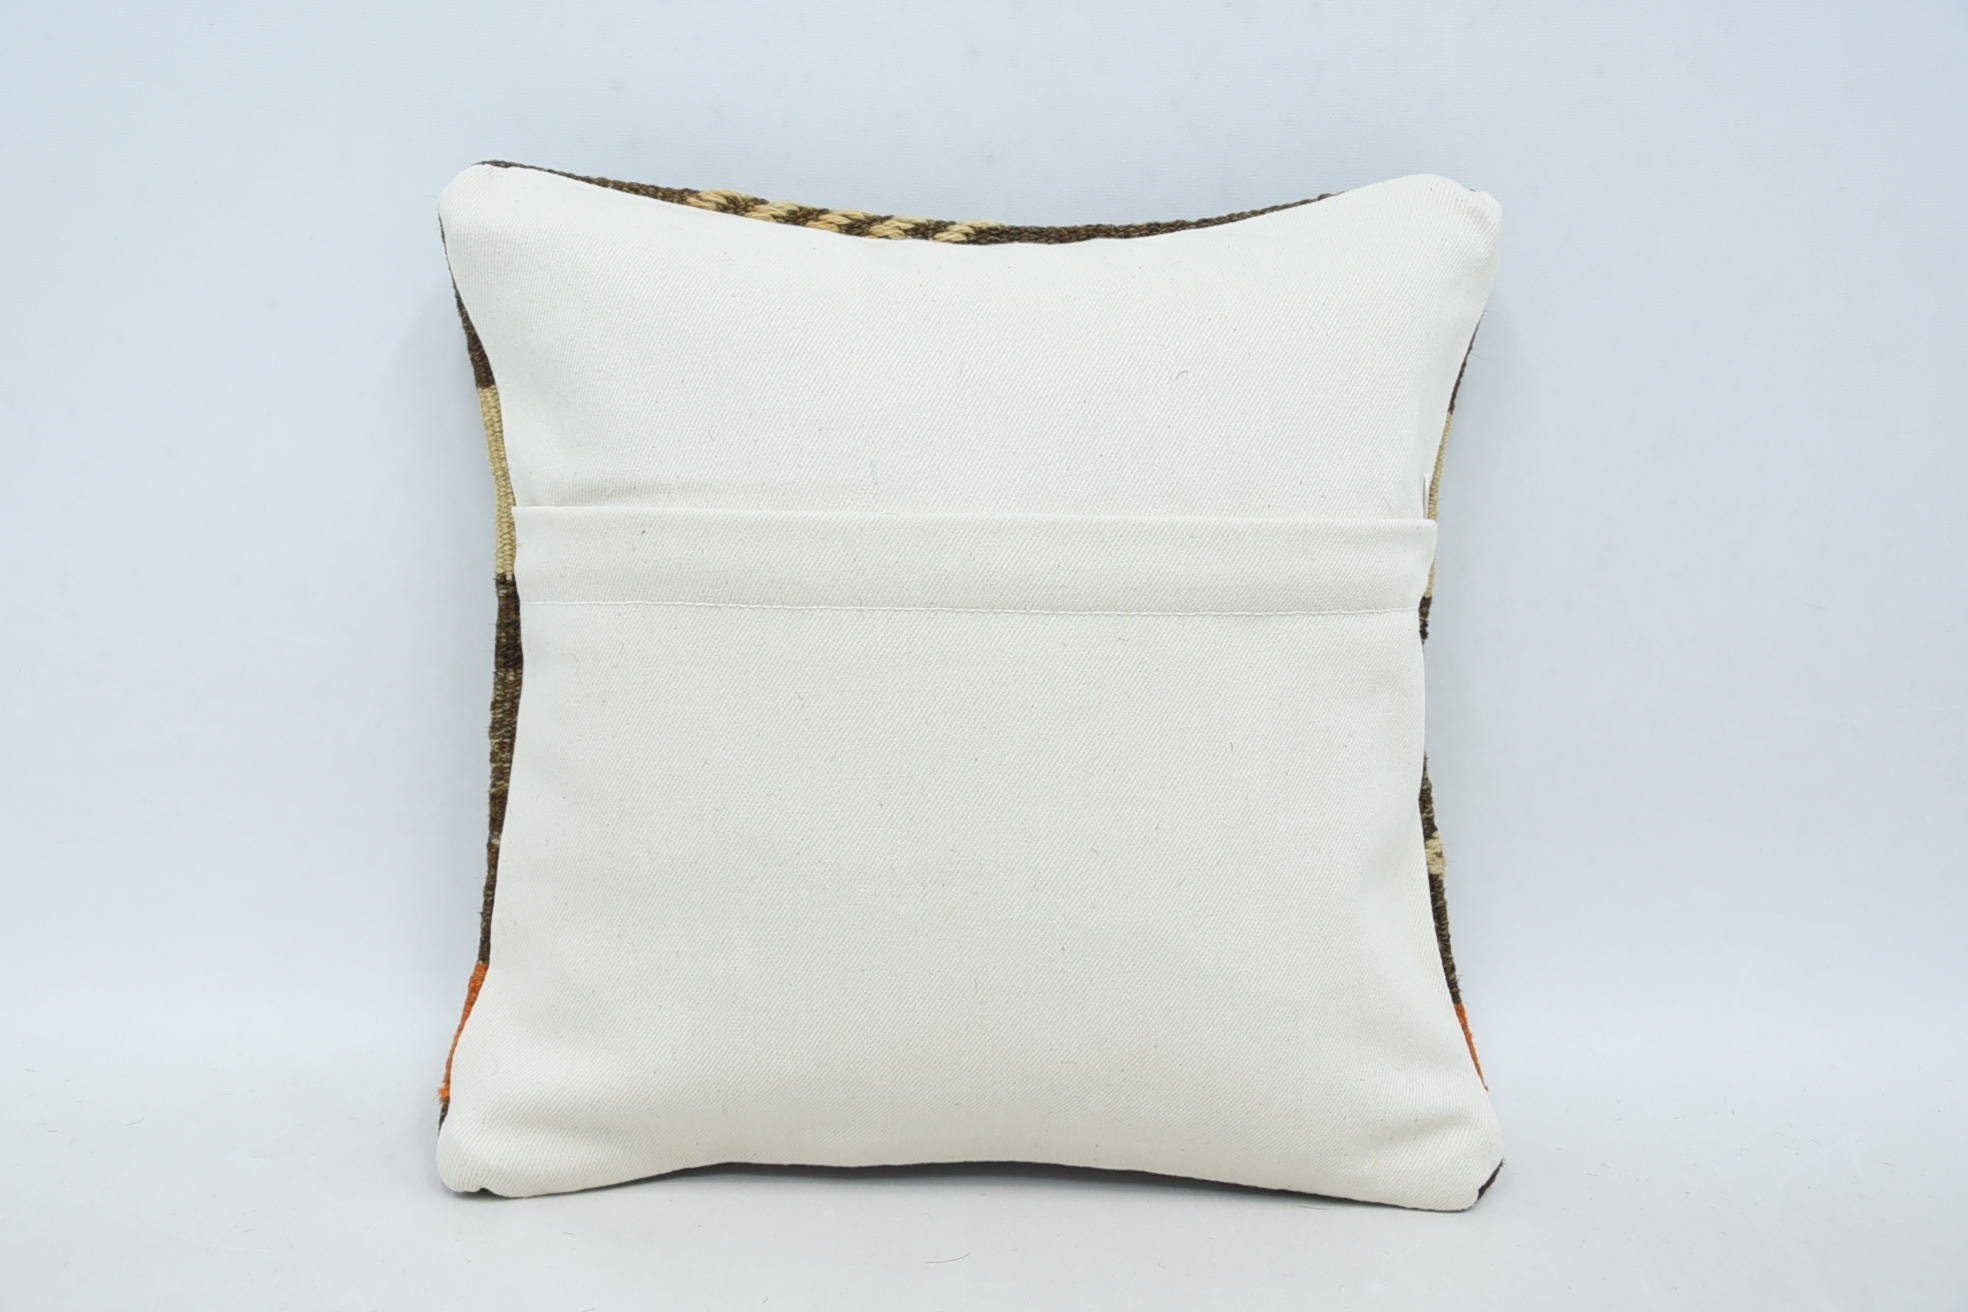 Wholesale Pillow Case, 12"x12" Brown Cushion, Crochet Pattern Pillow Case, Kilim Pillow, Boho Pillow, Kilim Cushion Sham